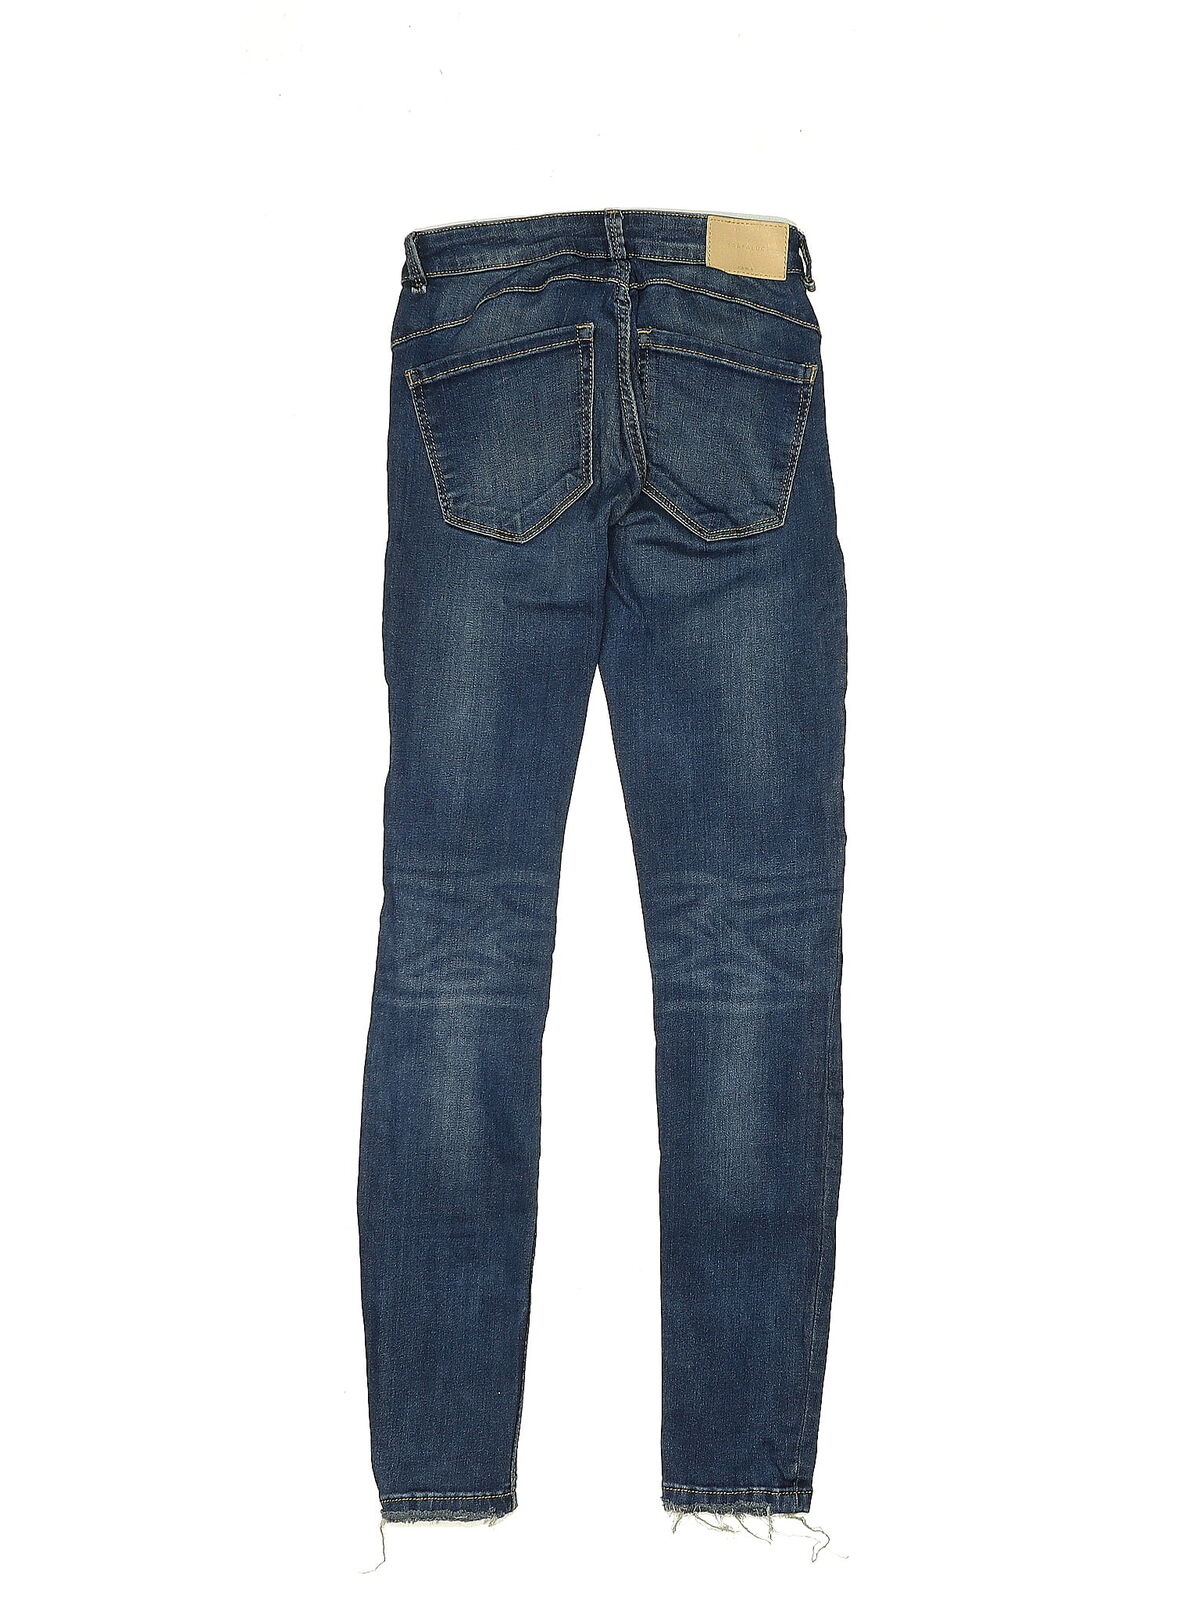 Trafaluc by Zara Women Blue Jeans 00 - image 2